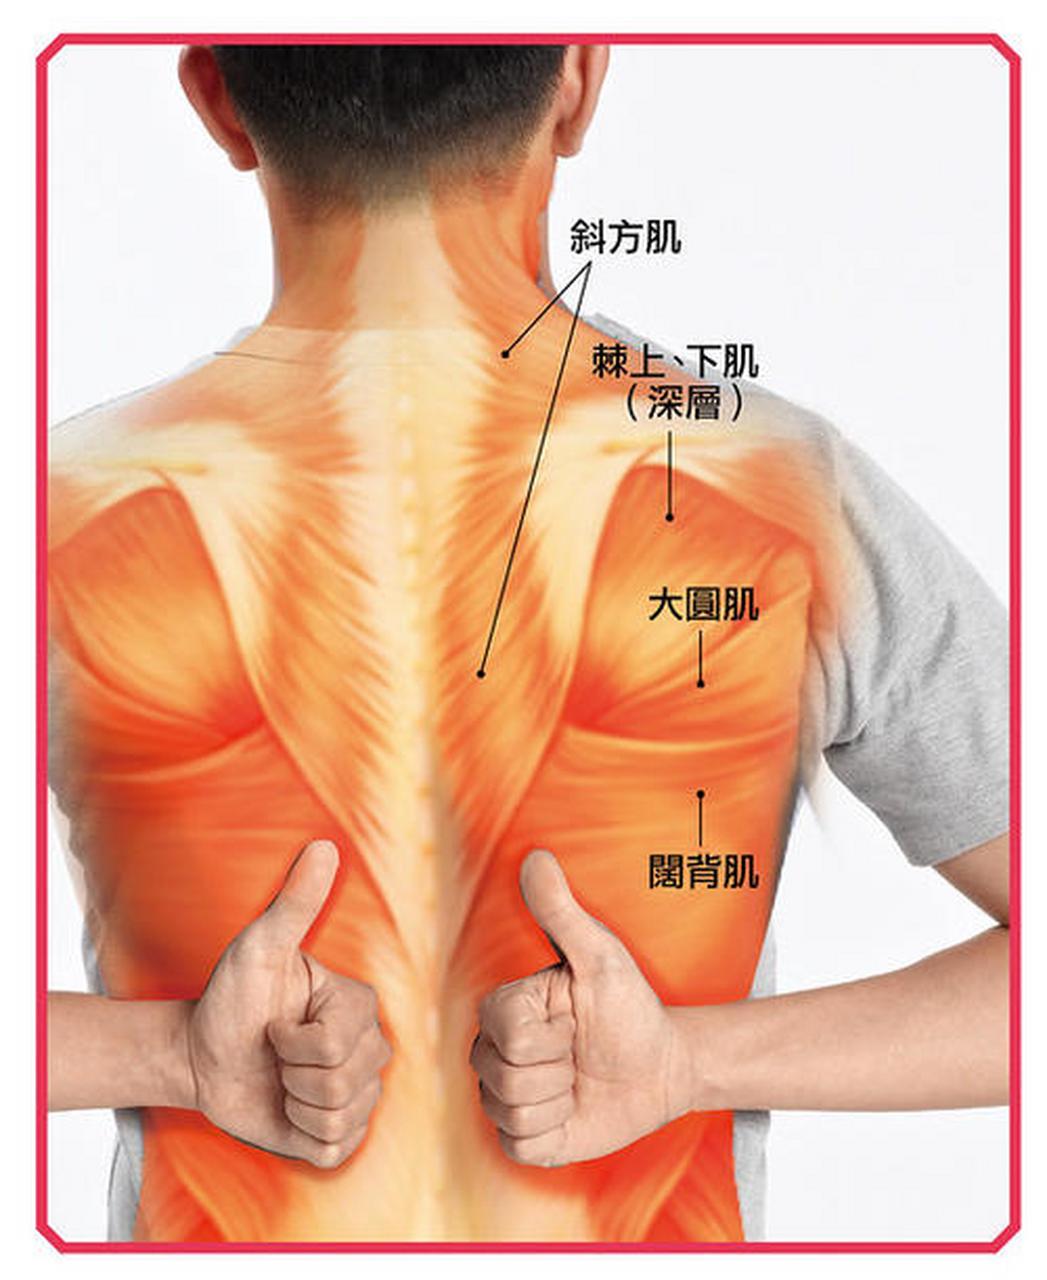 胆囊炎引起肩背部疼痛的思考 胆囊炎疼痛可以放射到右侧肩背部或者